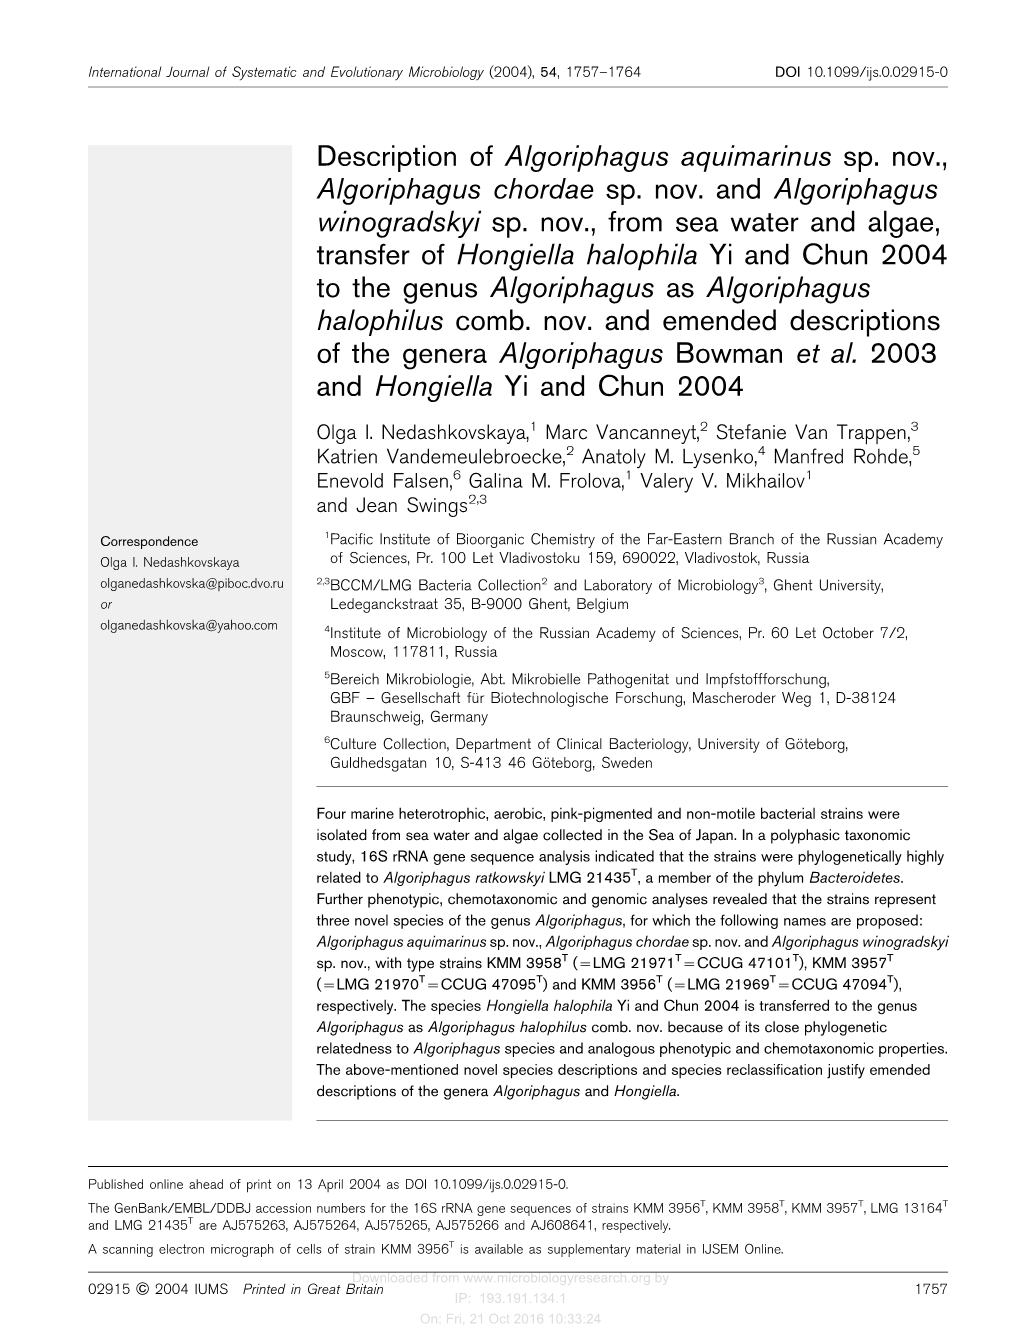 Description of Algoriphagus Aquimarinus Sp. Nov., Algoriphagus Chordae Sp